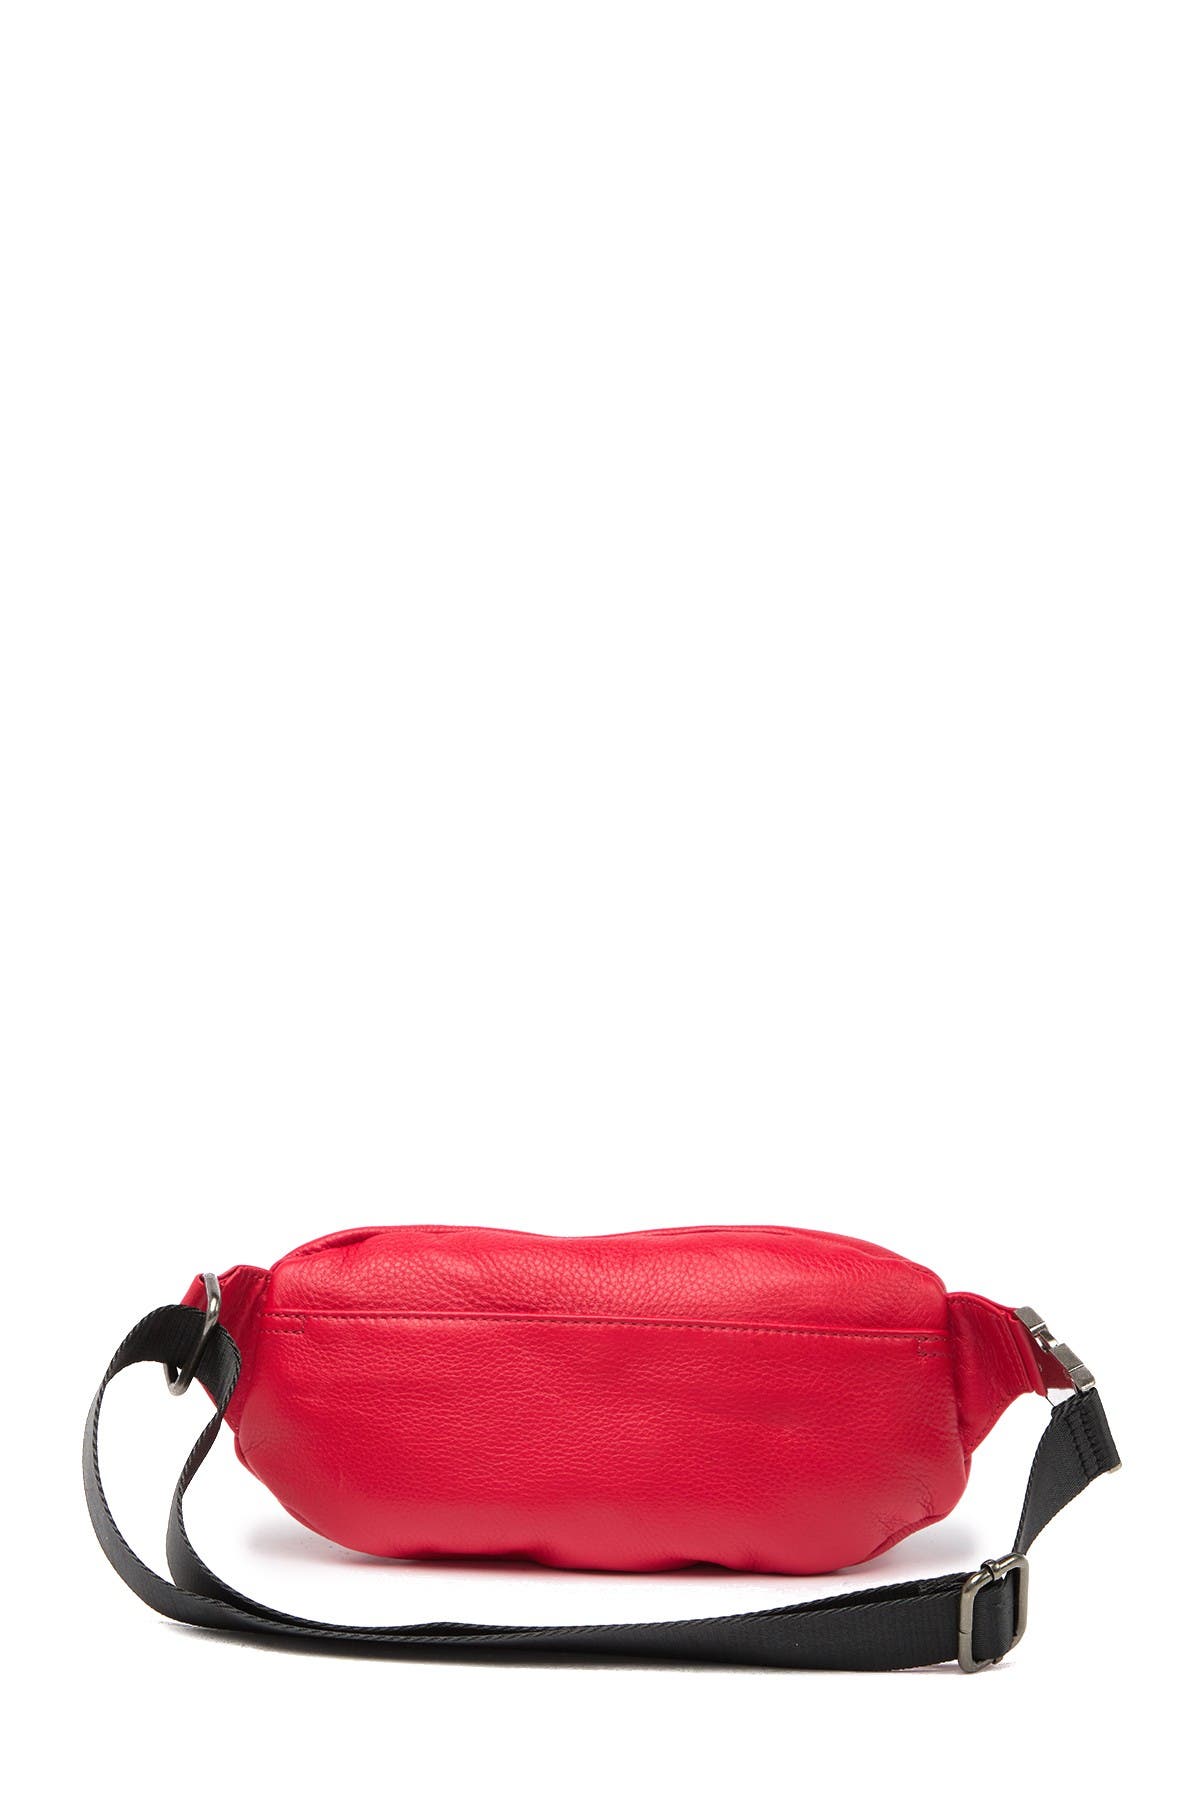 Aimee Kestenberg | Milan Leather Belt Bag | Nordstrom Rack